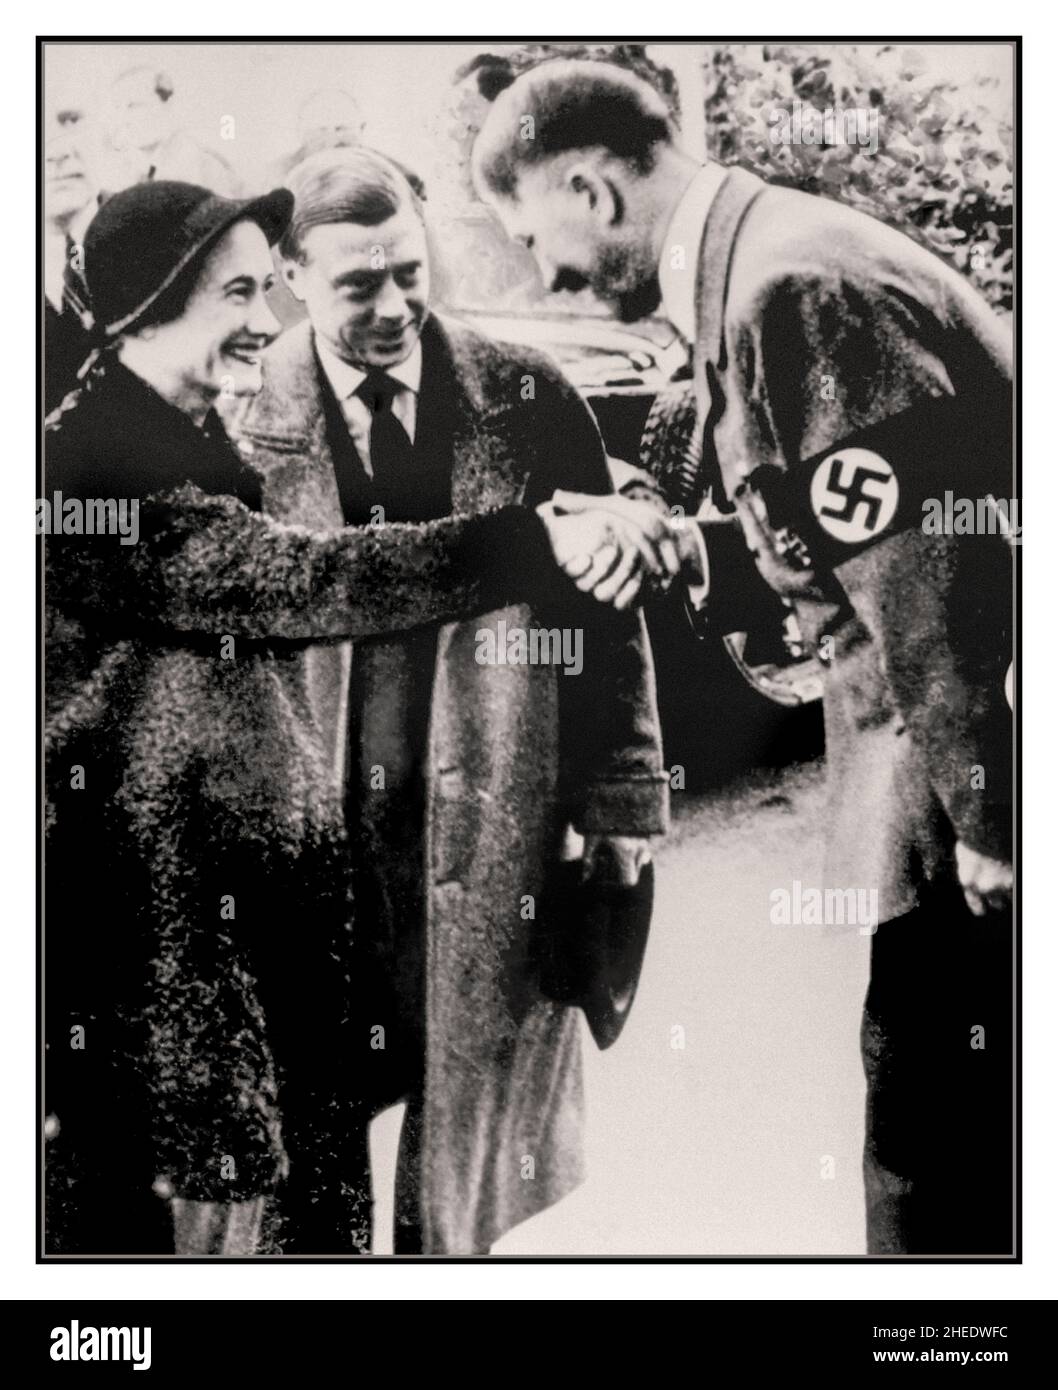 Adolf Hitler begrüßt den Herzog und die Herzogin von Windsor am Ende ihrer Süddeutschlandreise die Tour gipfelte am 22. Oktober 1937, als sie Hitler im Berghof trafen. Hitler hatte den Wunsch geäußert, den Herzog zu treffen.der Herzog und die Herzogin mussten warten, bevor Hitler bereit war, sie zu sehen, obwohl er, so Vickers, in einer genialen Stimmung war, als er es tat. Die beiden Männer hatten eine einstündige Diskussion, wobei Hitler die meisten Reden hielt, von denen bekannt ist, dass der Herzog Hitler in Deutschlands gewünschter territorialer Expansion nach Mittel- und Osteuropa ermutigt hat. Das Protokoll der Sitzung scheint verloren gegangen zu sein, Stockfoto